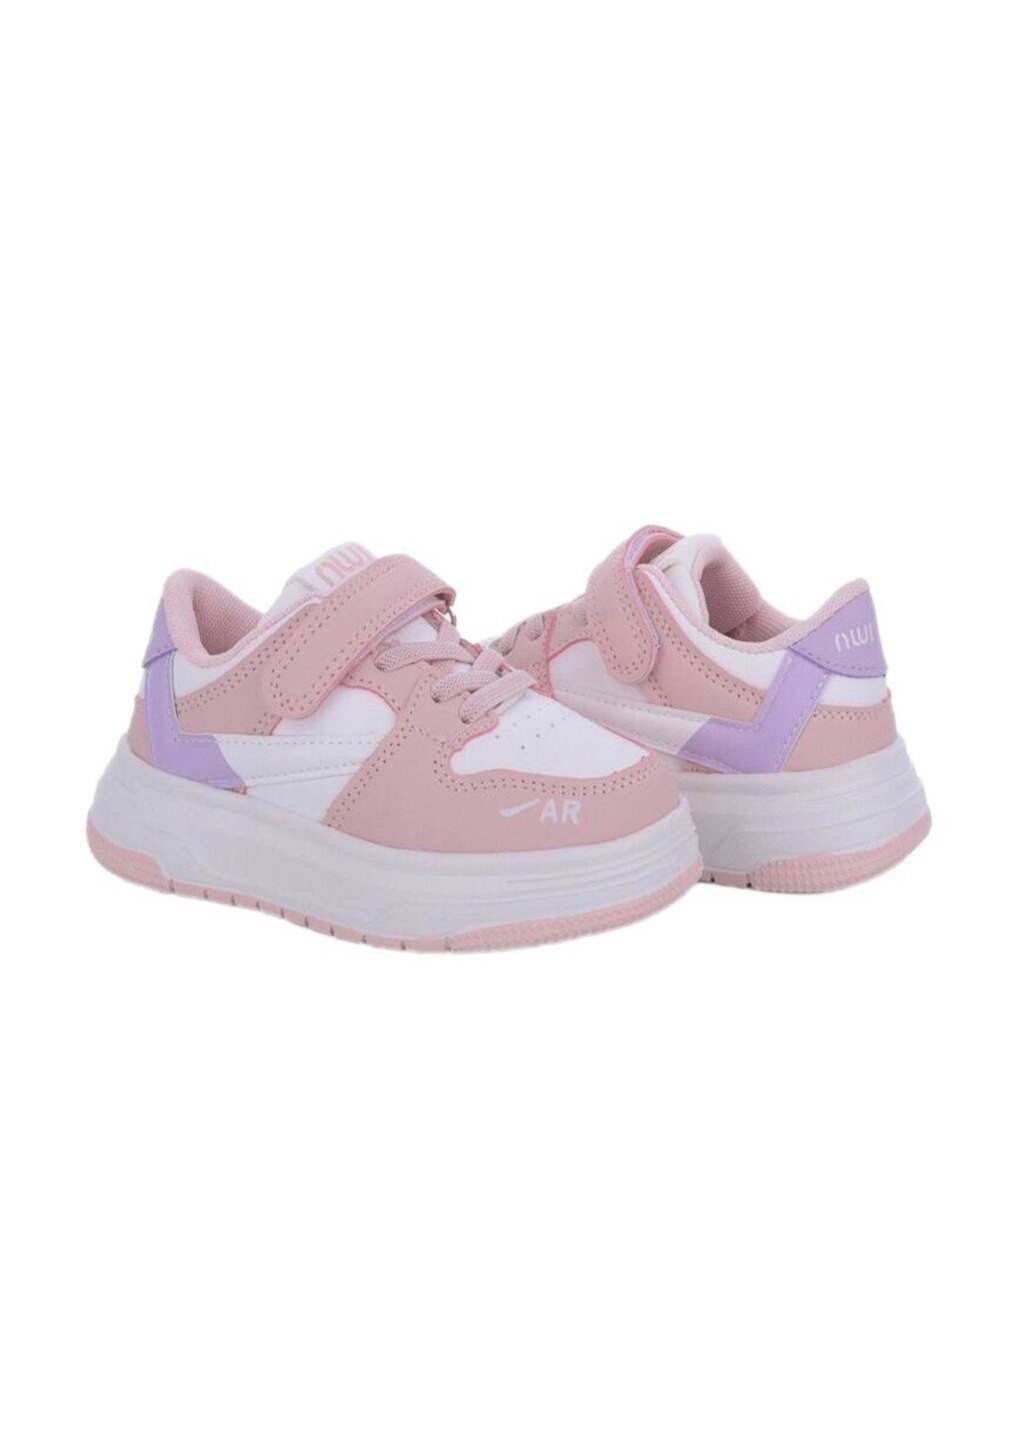 Розовые демисезонные кроссовки демисезон для девочки Jong Golf